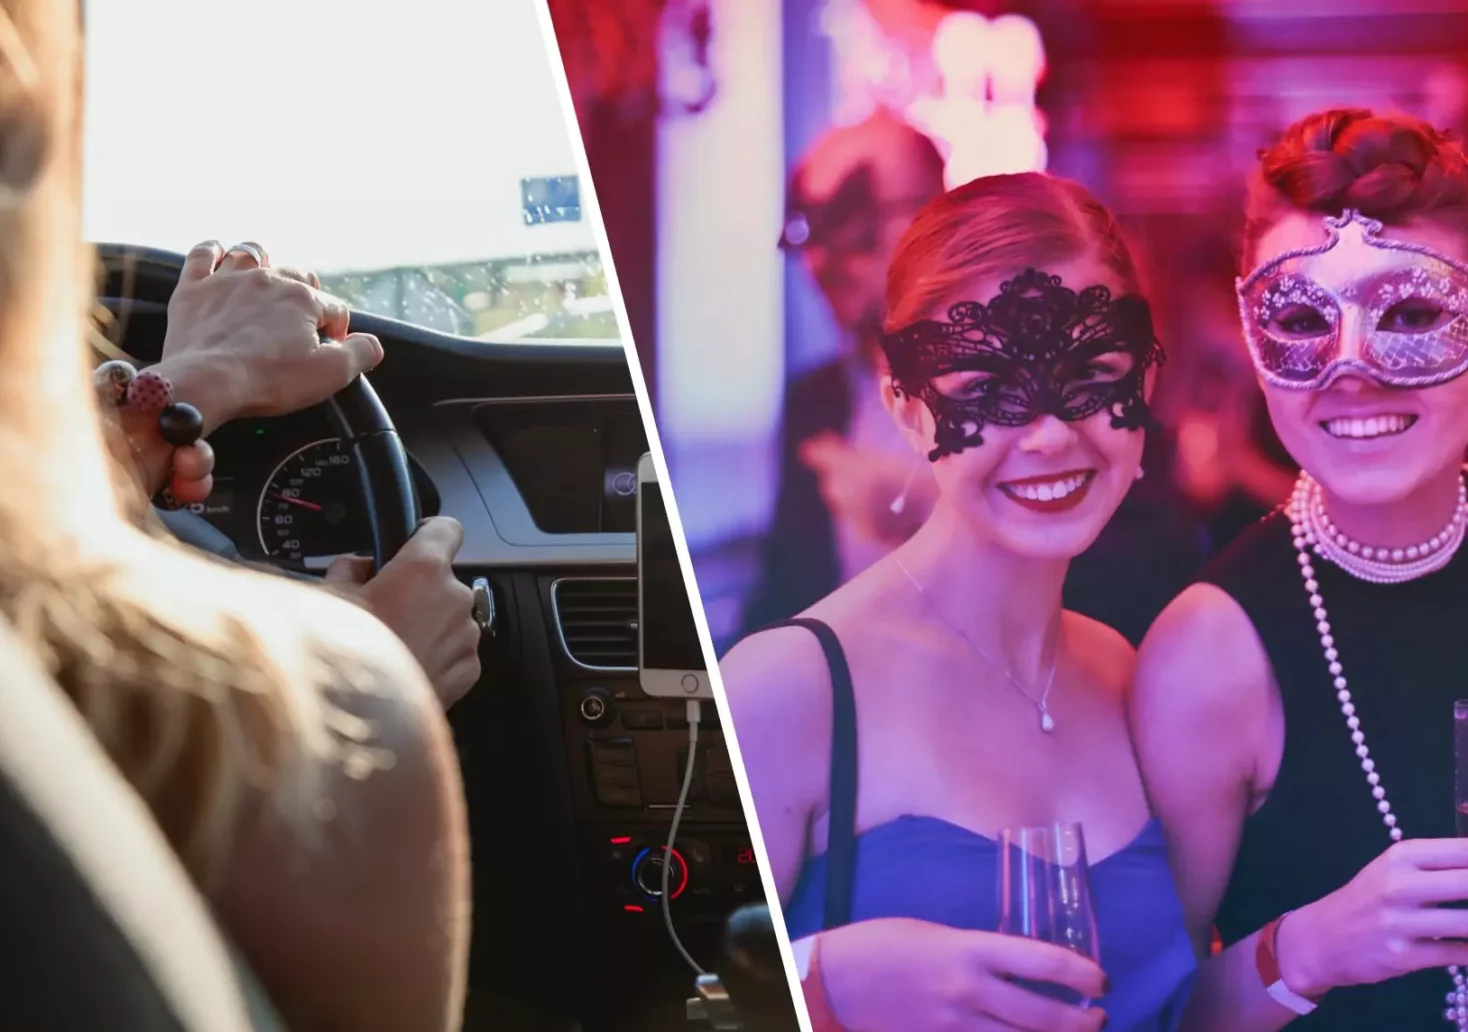 Eine Bildmontage auf 5min.at zeigt eine Autofahrerin und feiernde Faschingsgäste.